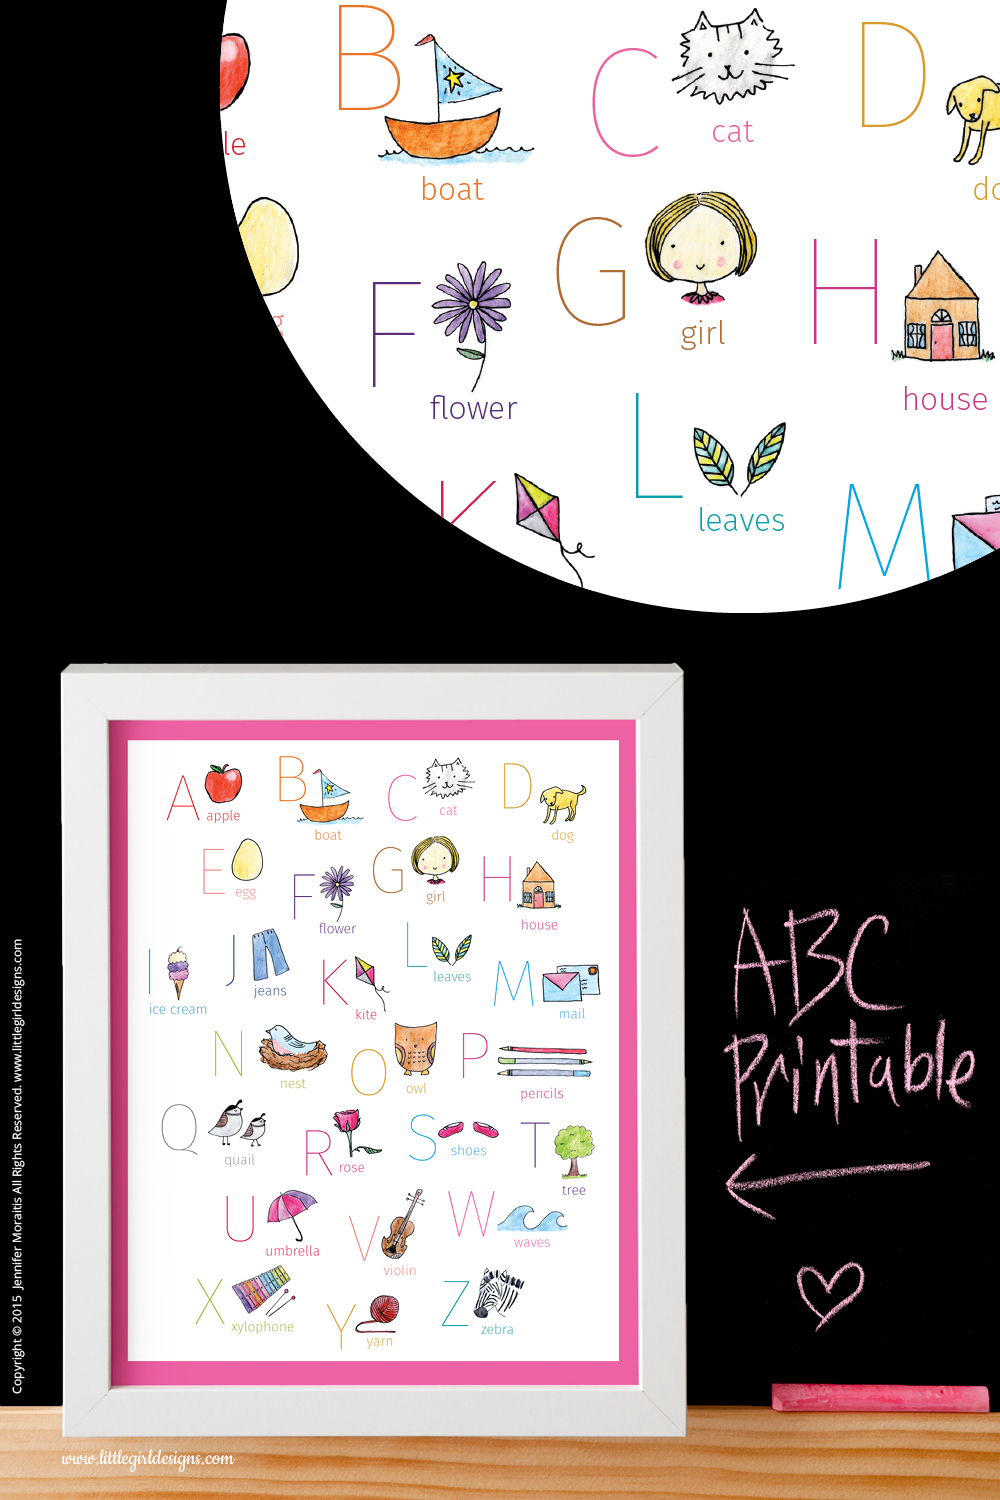 ABC Printables – Etsy Shop Launch!